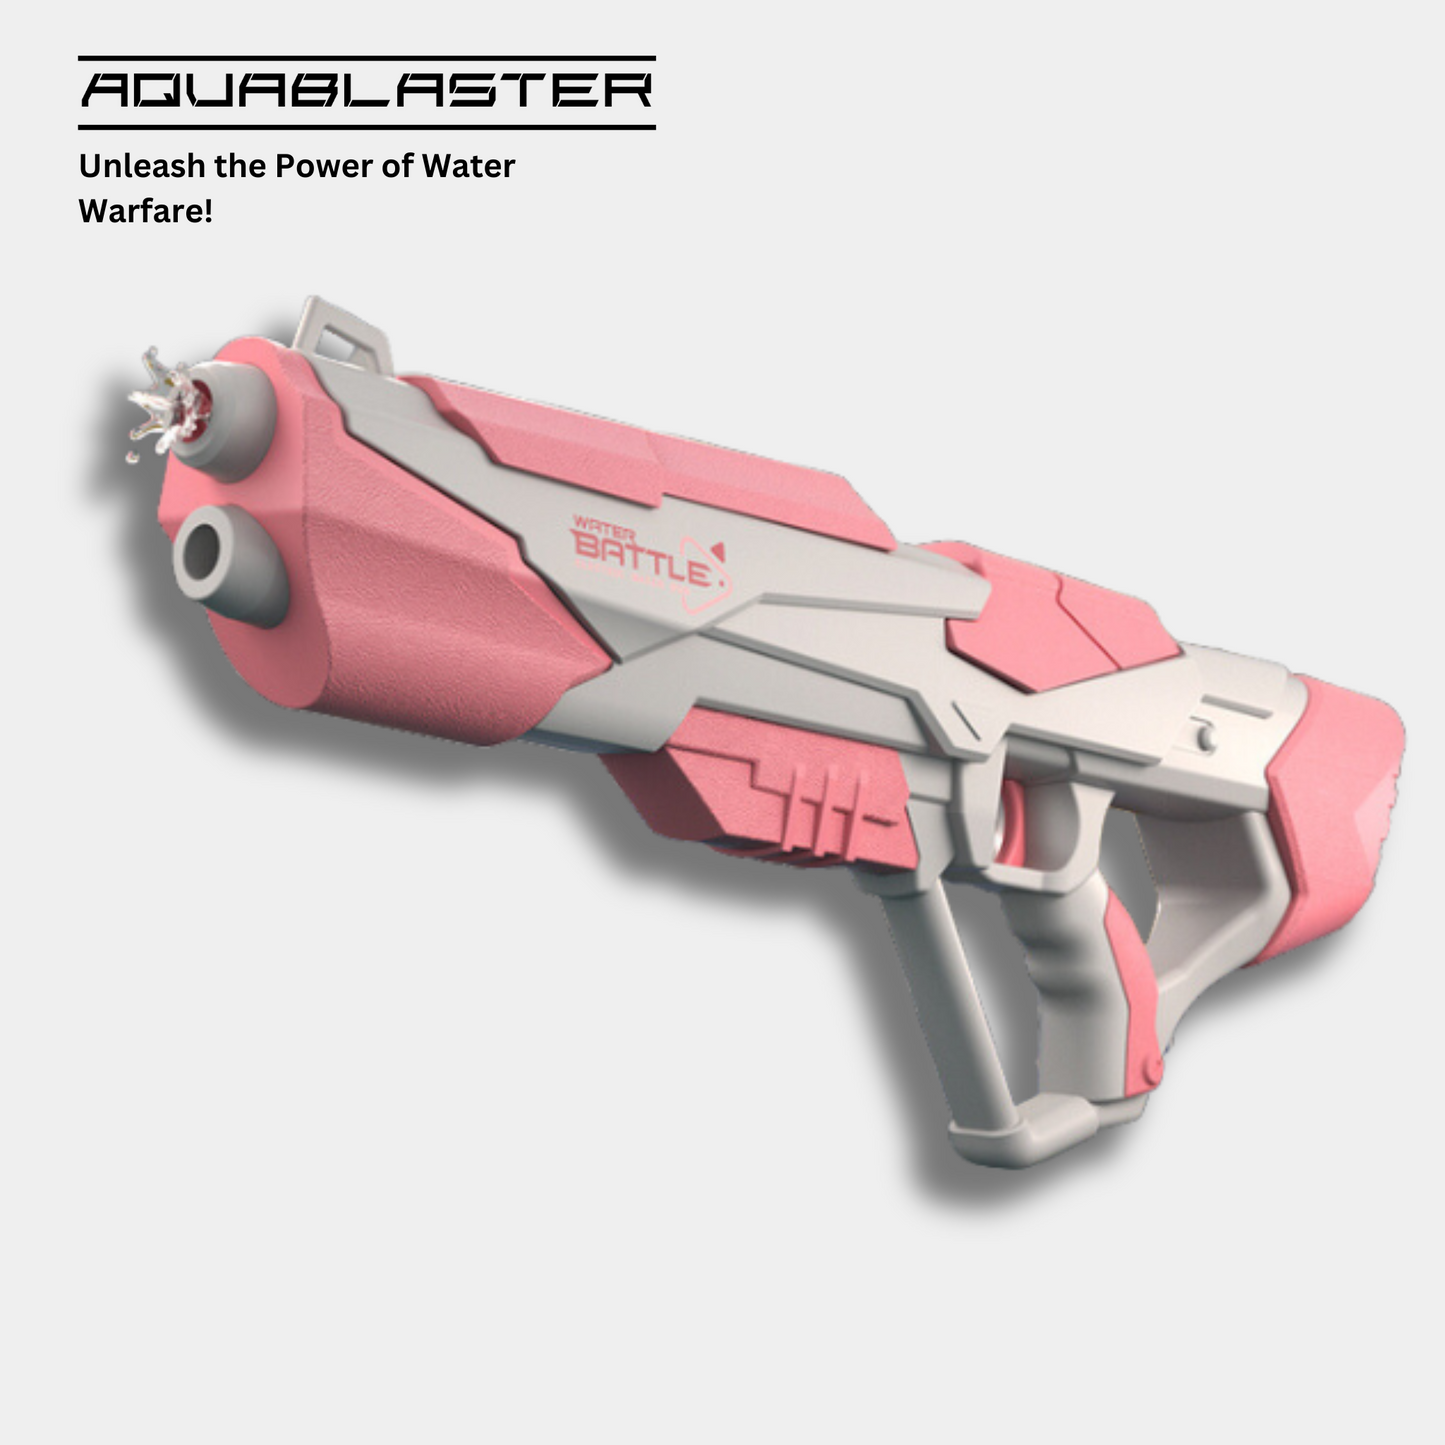 AquaBlaster Electric Water Gun